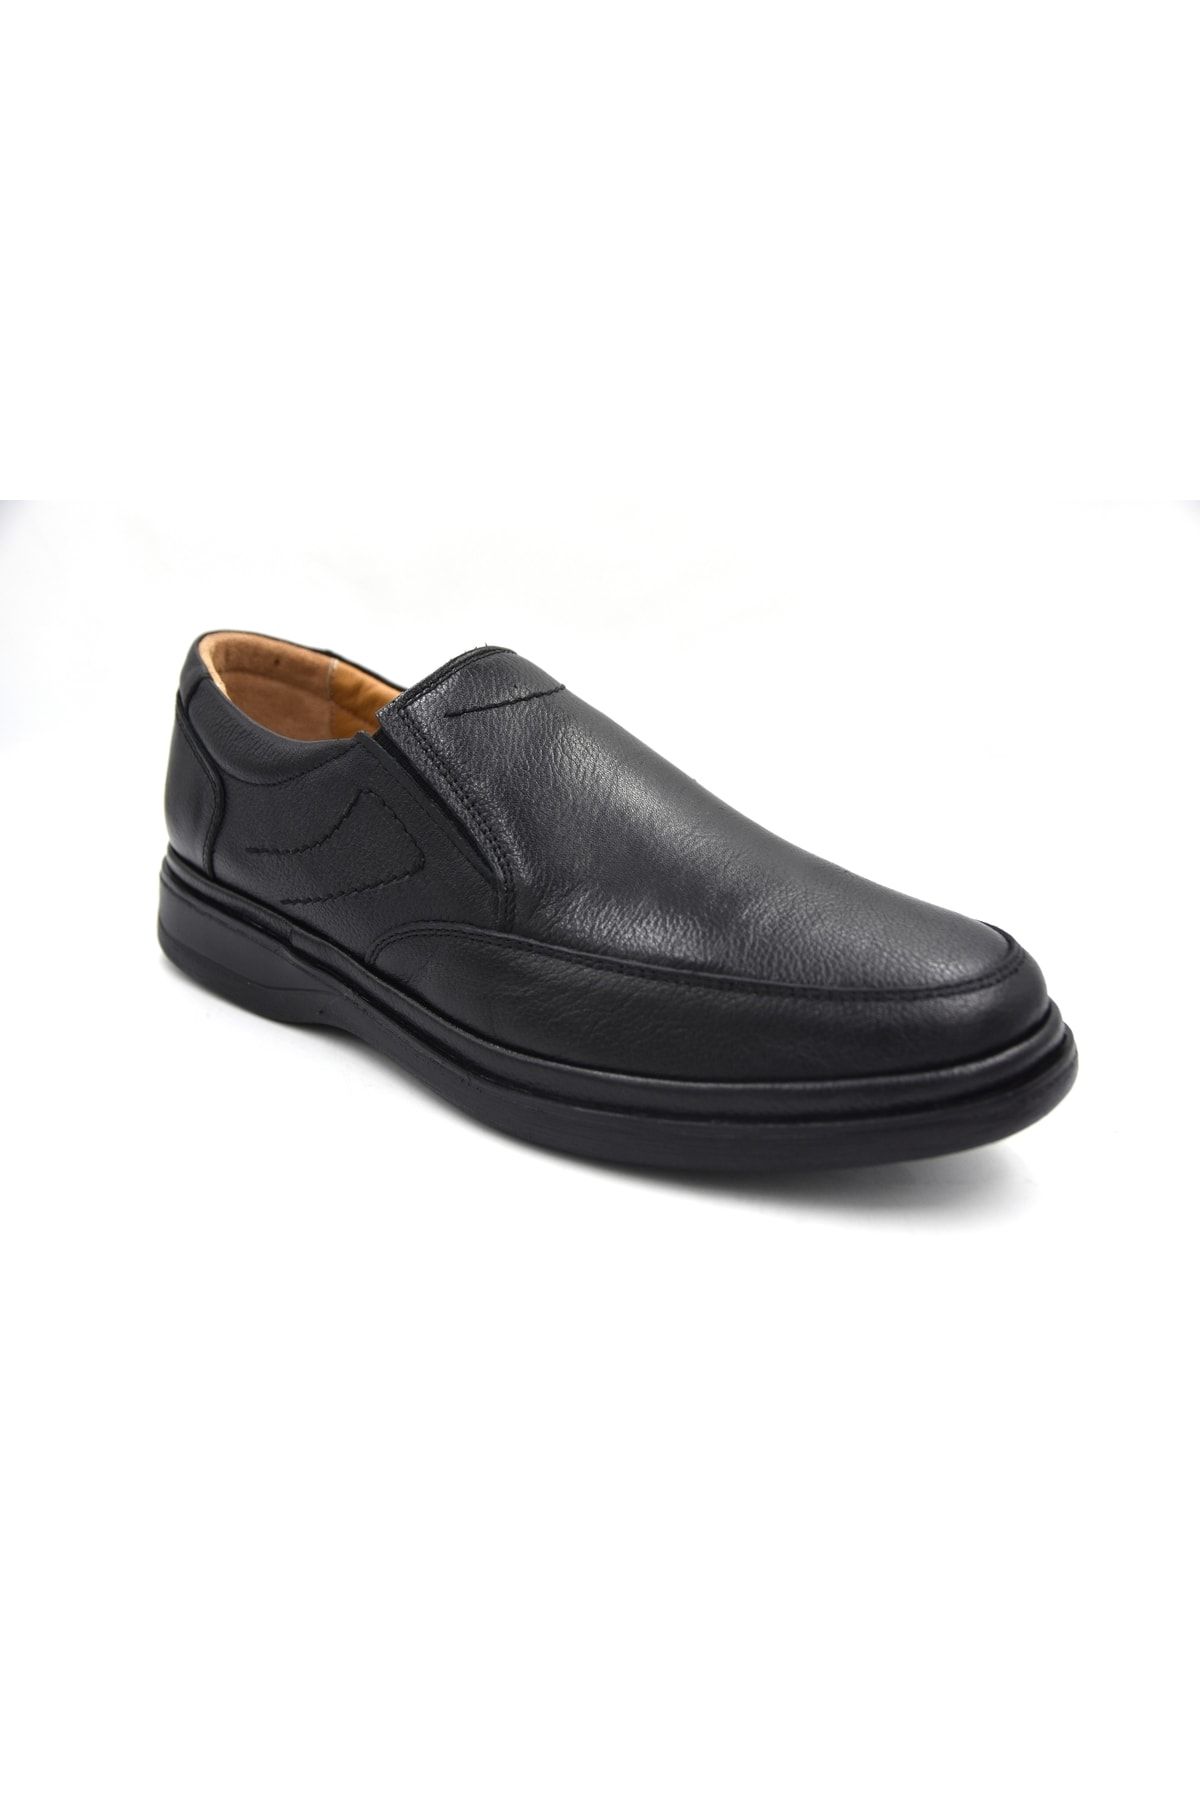 Prego Hakiki Deri Poli Taban Topuk Dikeni Destekli Bağcıklı Erkek Günlük Confort Ayakkabı